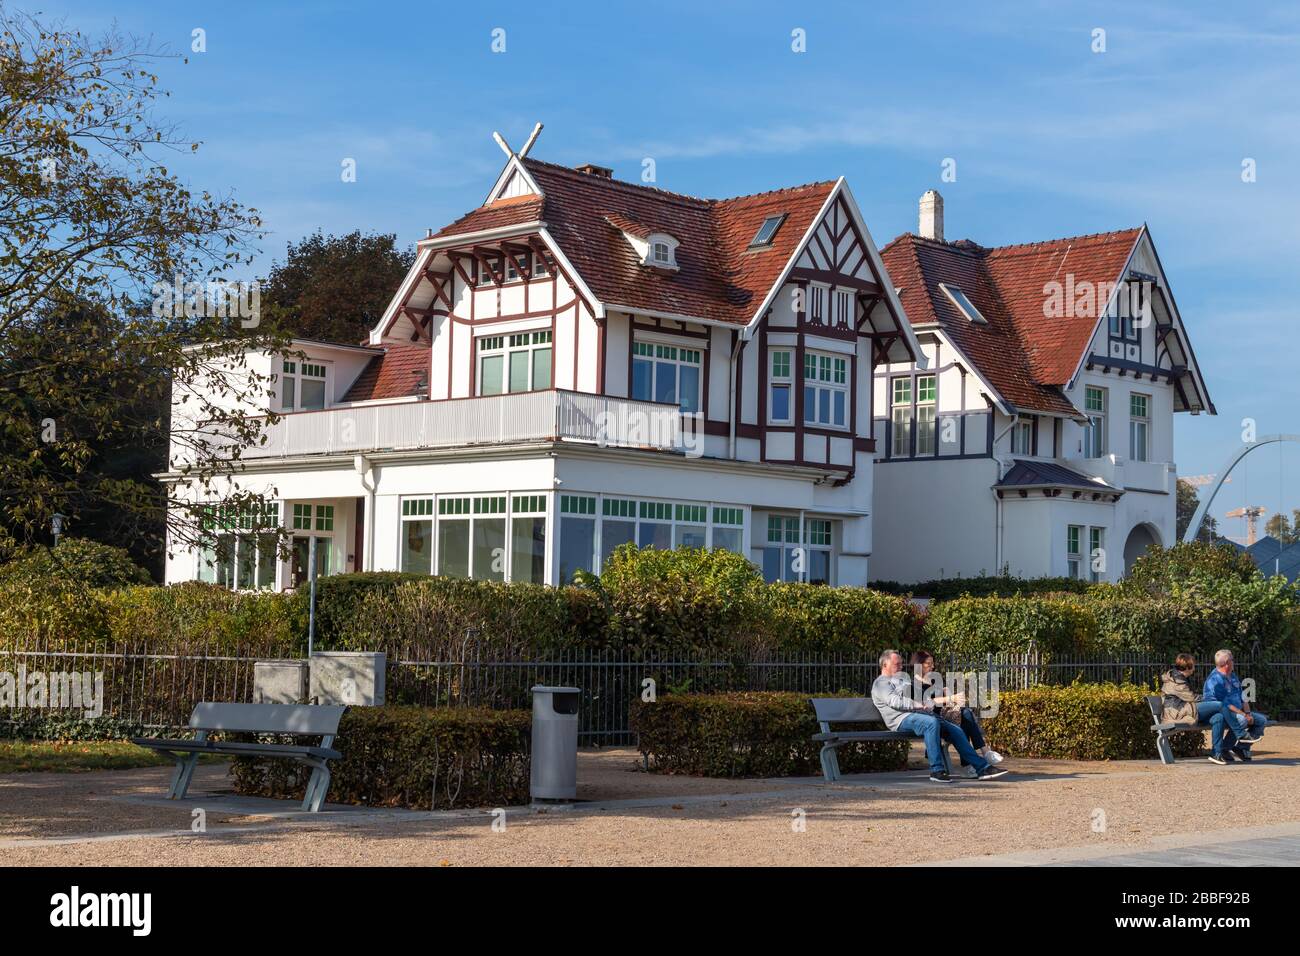 Lübeck-Travemünde, Deutschland - 10. Oktober 2018: Historische Gebäude an der Strandpromenade von Travemünde. Ein Touristenmagnet für Ostsee-Urlauber. H Stockfoto